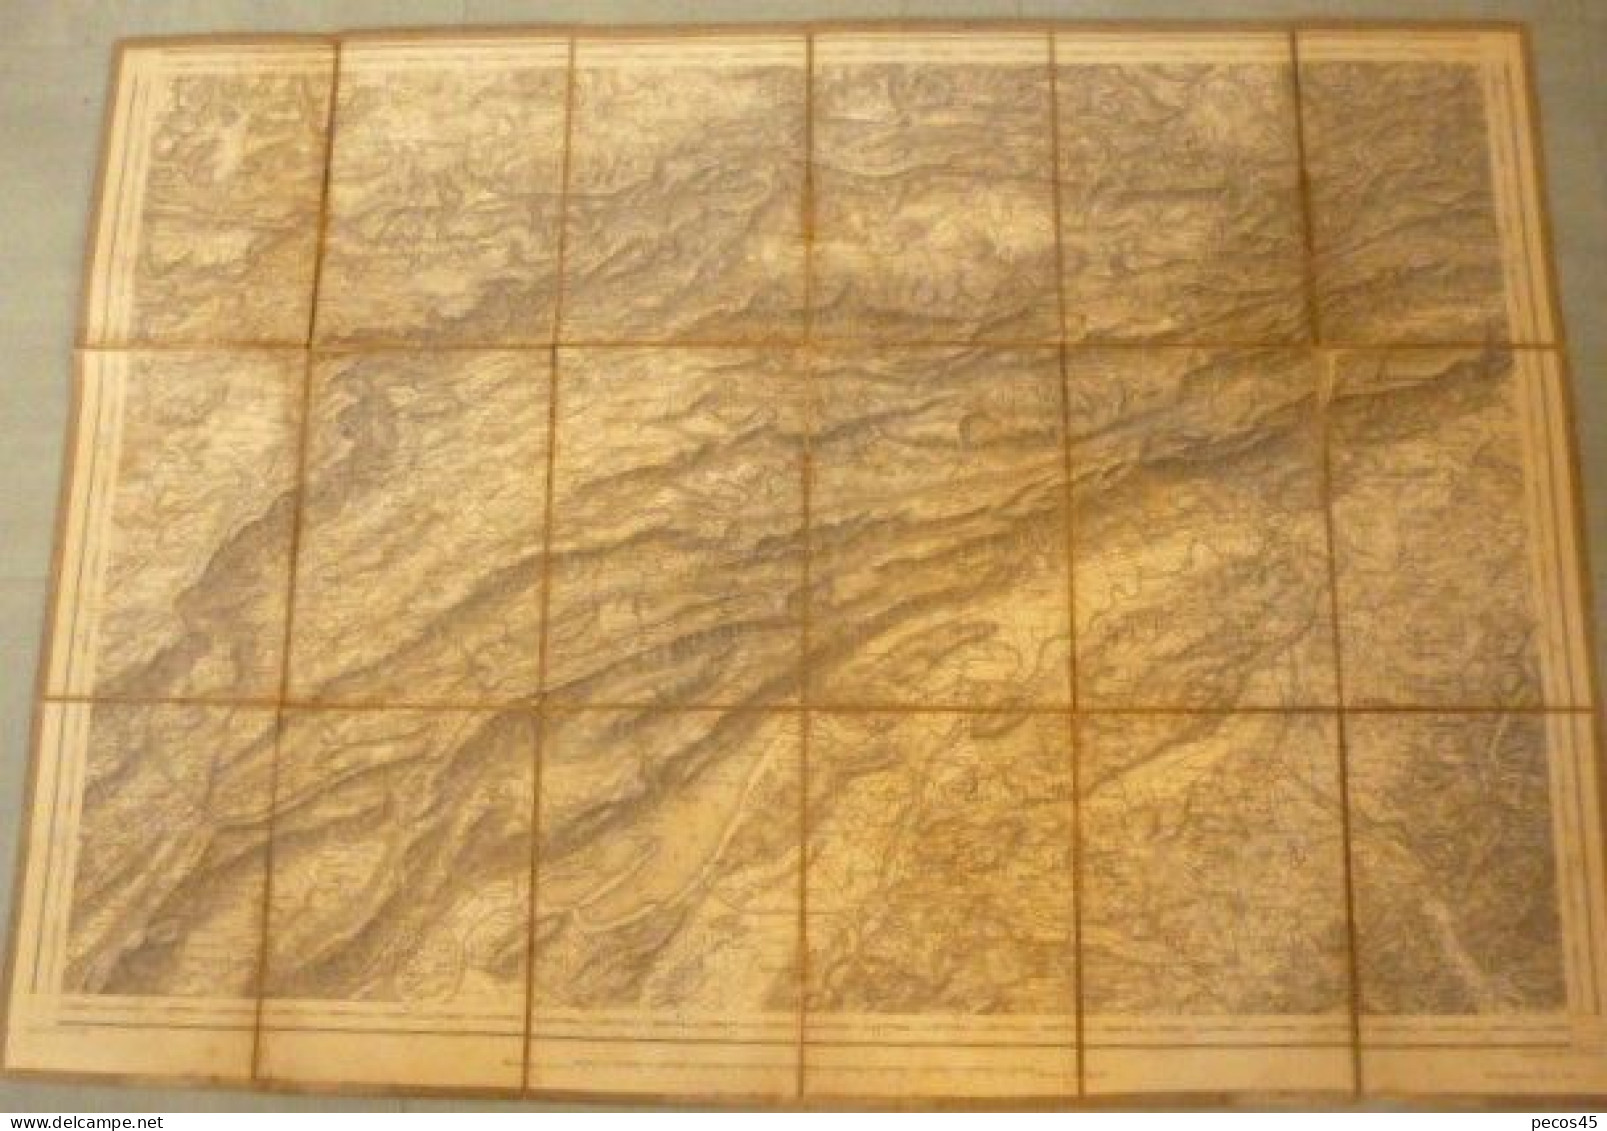 Carte Entoilée De SUISSE : Du Lac De BIELLE Et SOLOTHEURN Jusqu'à DELEMONT Et PORRENTRUY - 1/100 000ème - 1887. - Cartes Topographiques